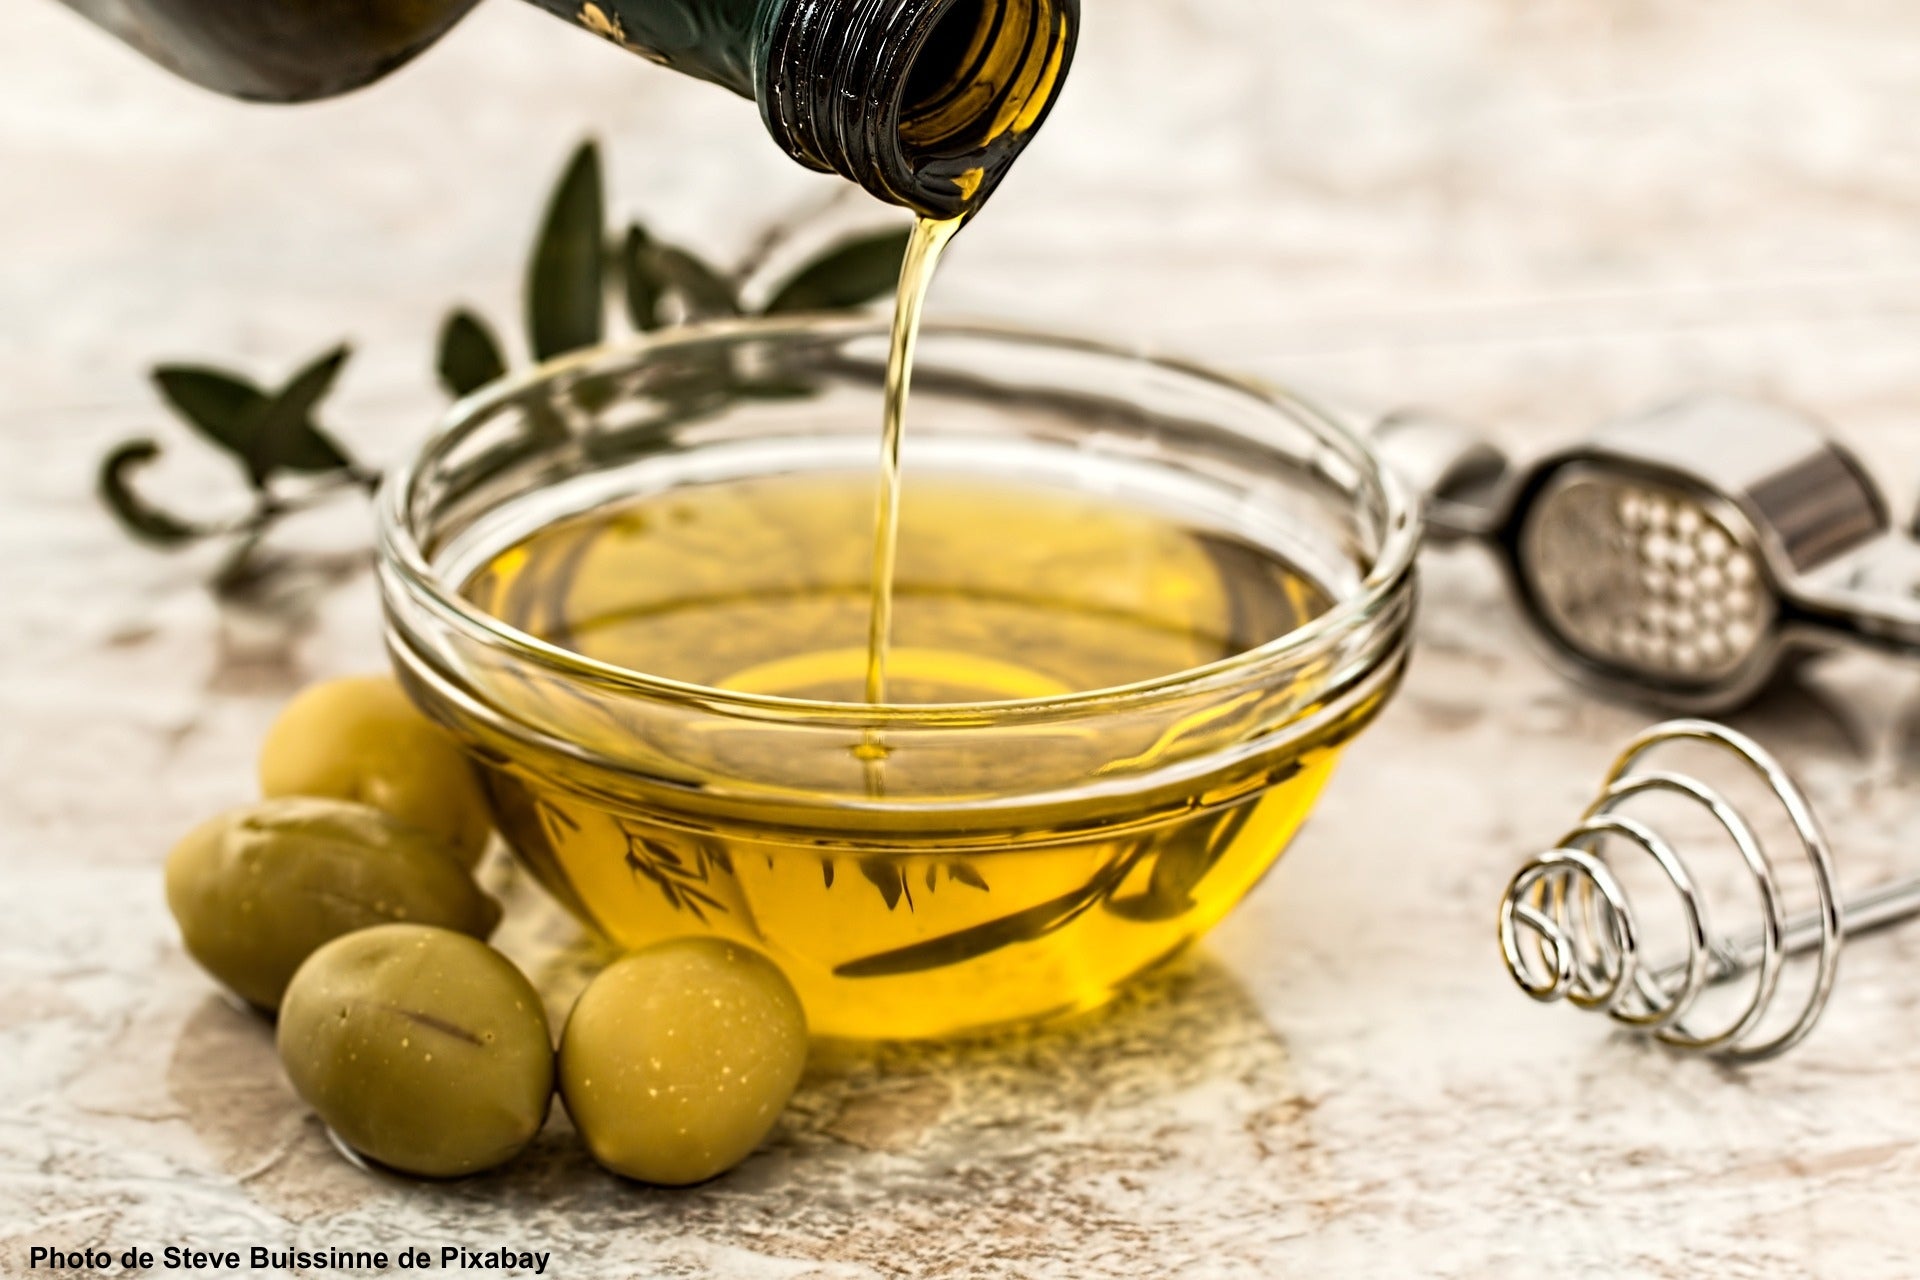 Huile d’olive coulant depuis une bouteille dans un bol posé sur une table avec des olives vertes et des ustensiles de cuisine – Photo de Steve Buissinne de Pixabay